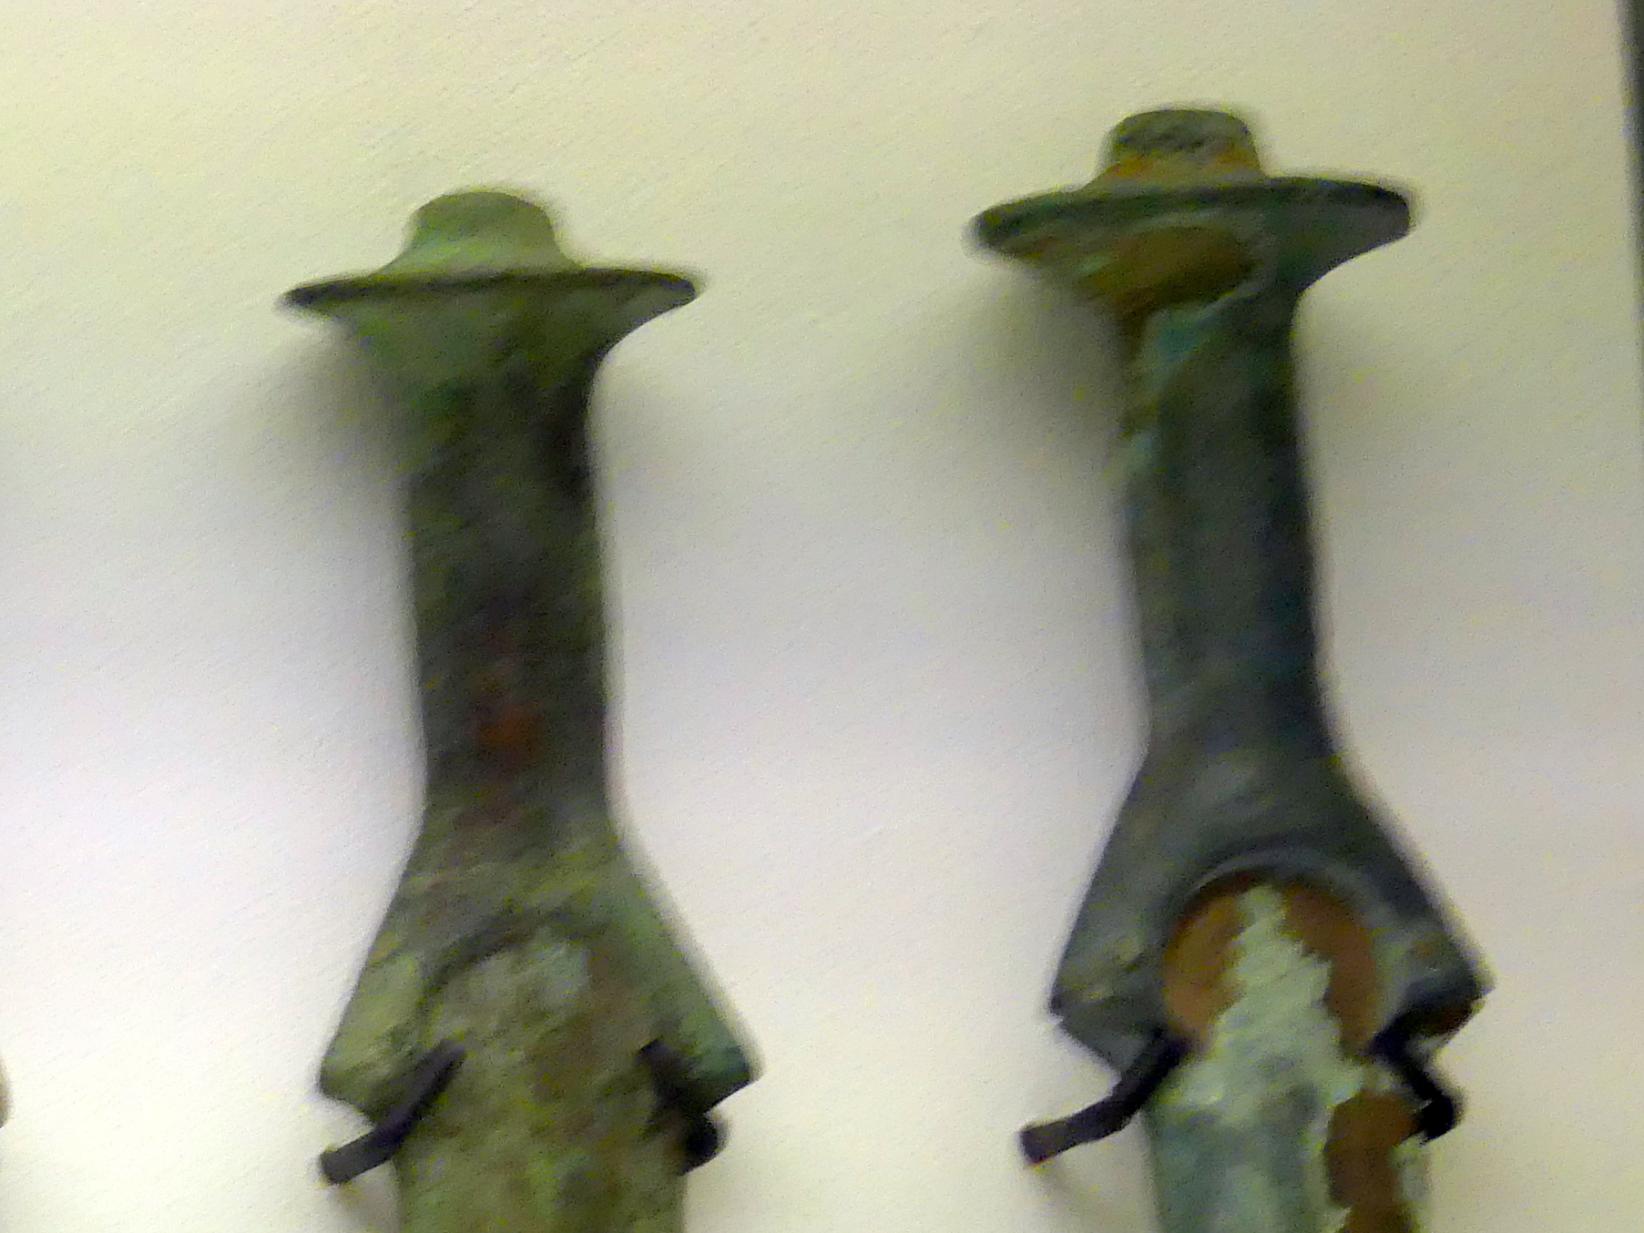 Achtkantschwert (Spitze abgebrochen), Mittlere Bronzezeit C1, 1500 - 1400 v. Chr., Mittlere Bronzezeit C2, Undatiert, Bild 2/4